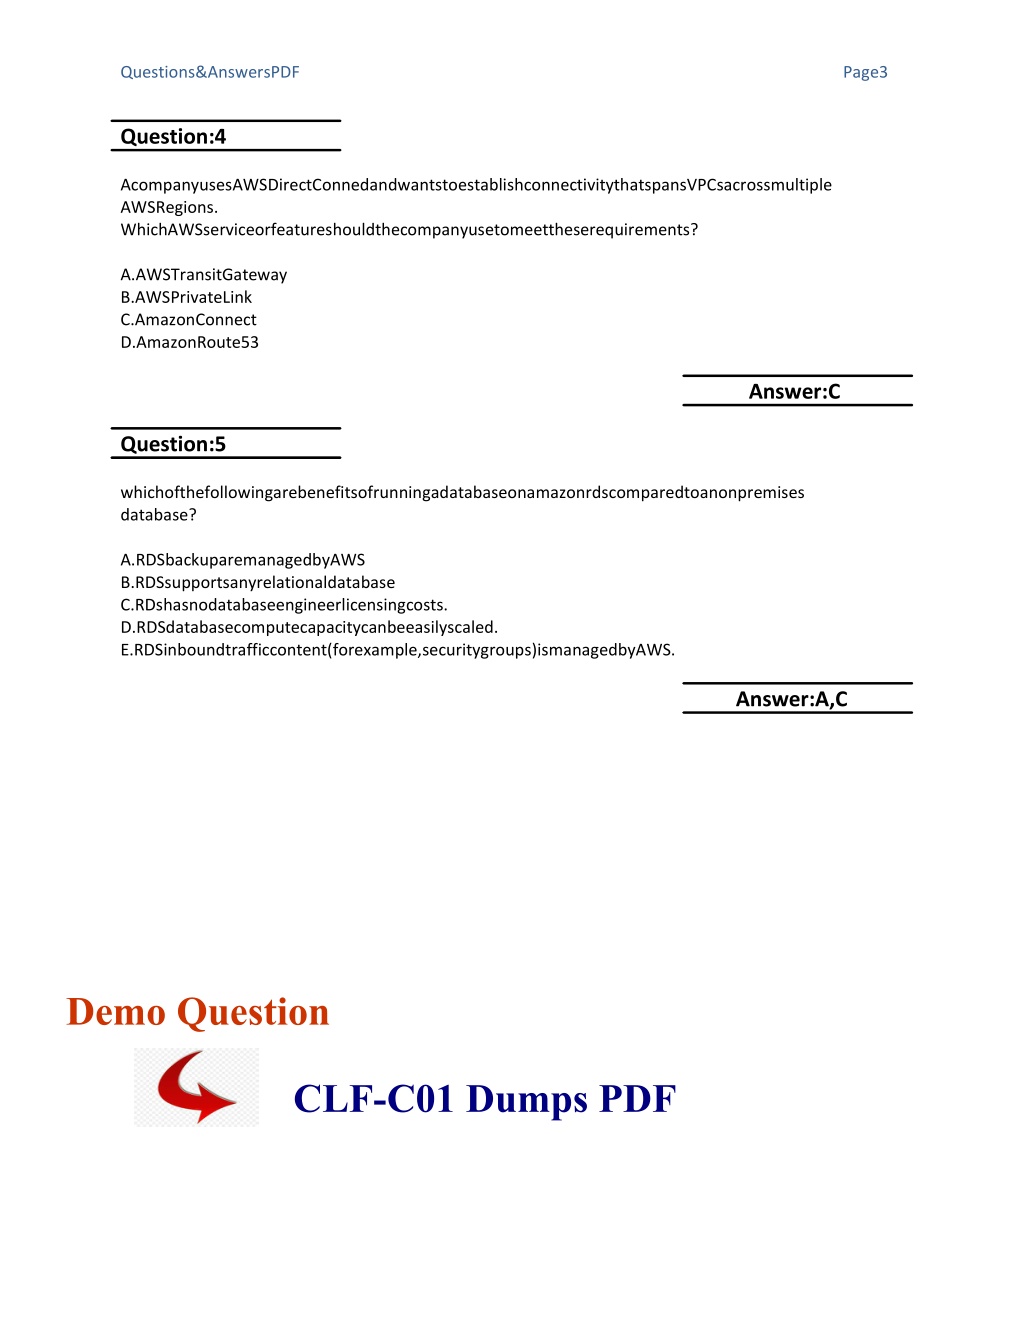 CLF-C01 Lerntipps